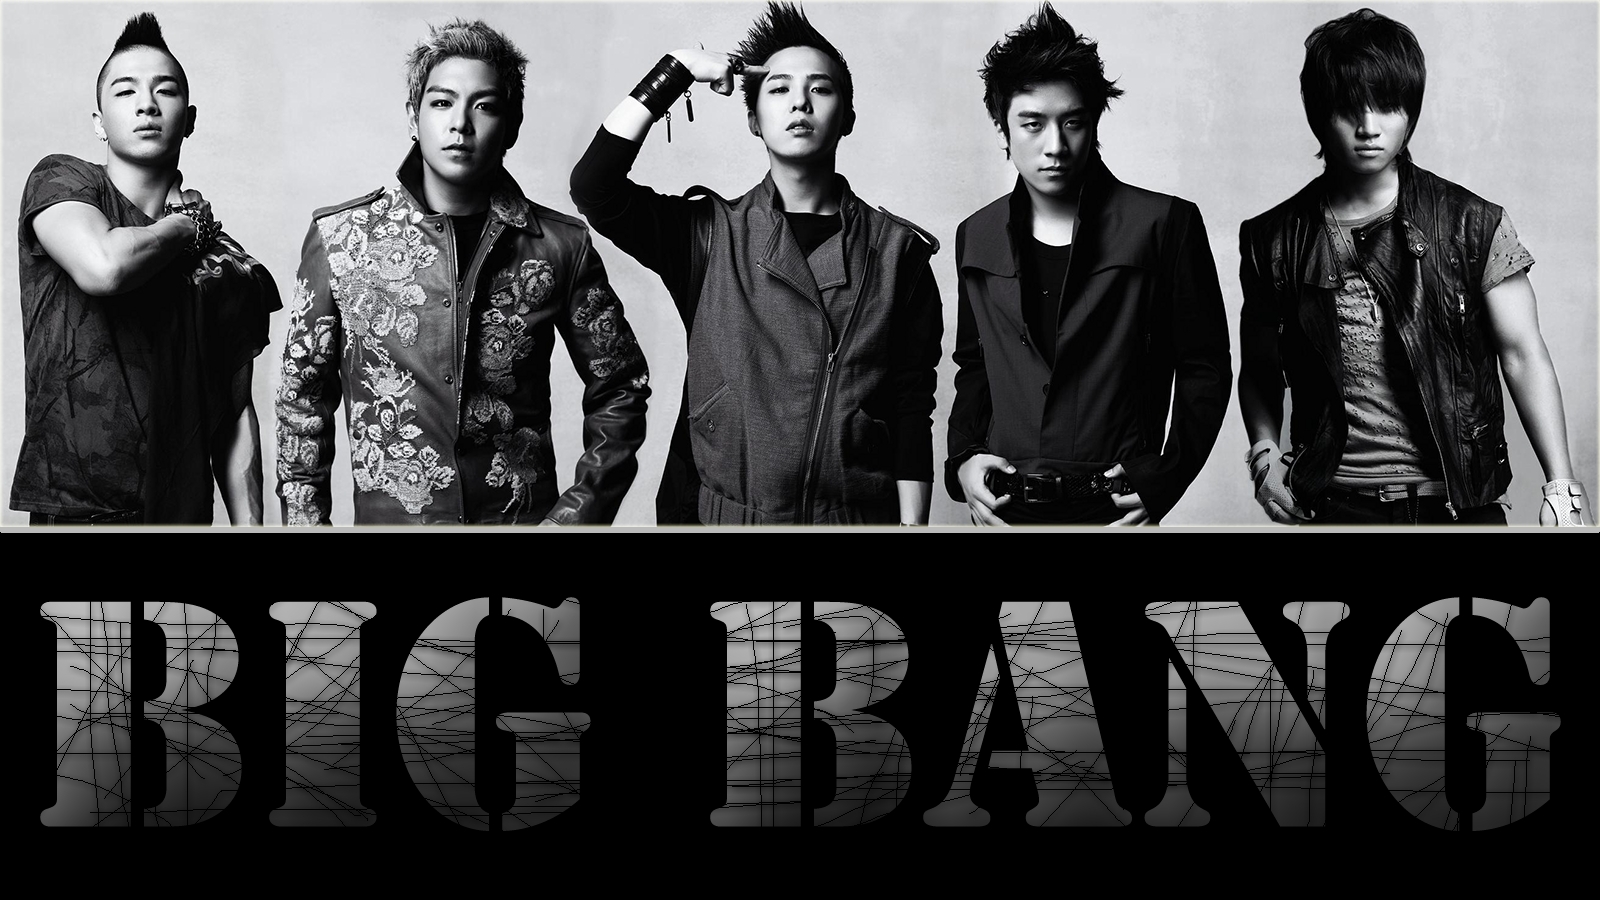 Big bang com. Биг бэнг группа. Бигбенг кпоп. Биг бенг корейская группа. BIGBANG 4.4.